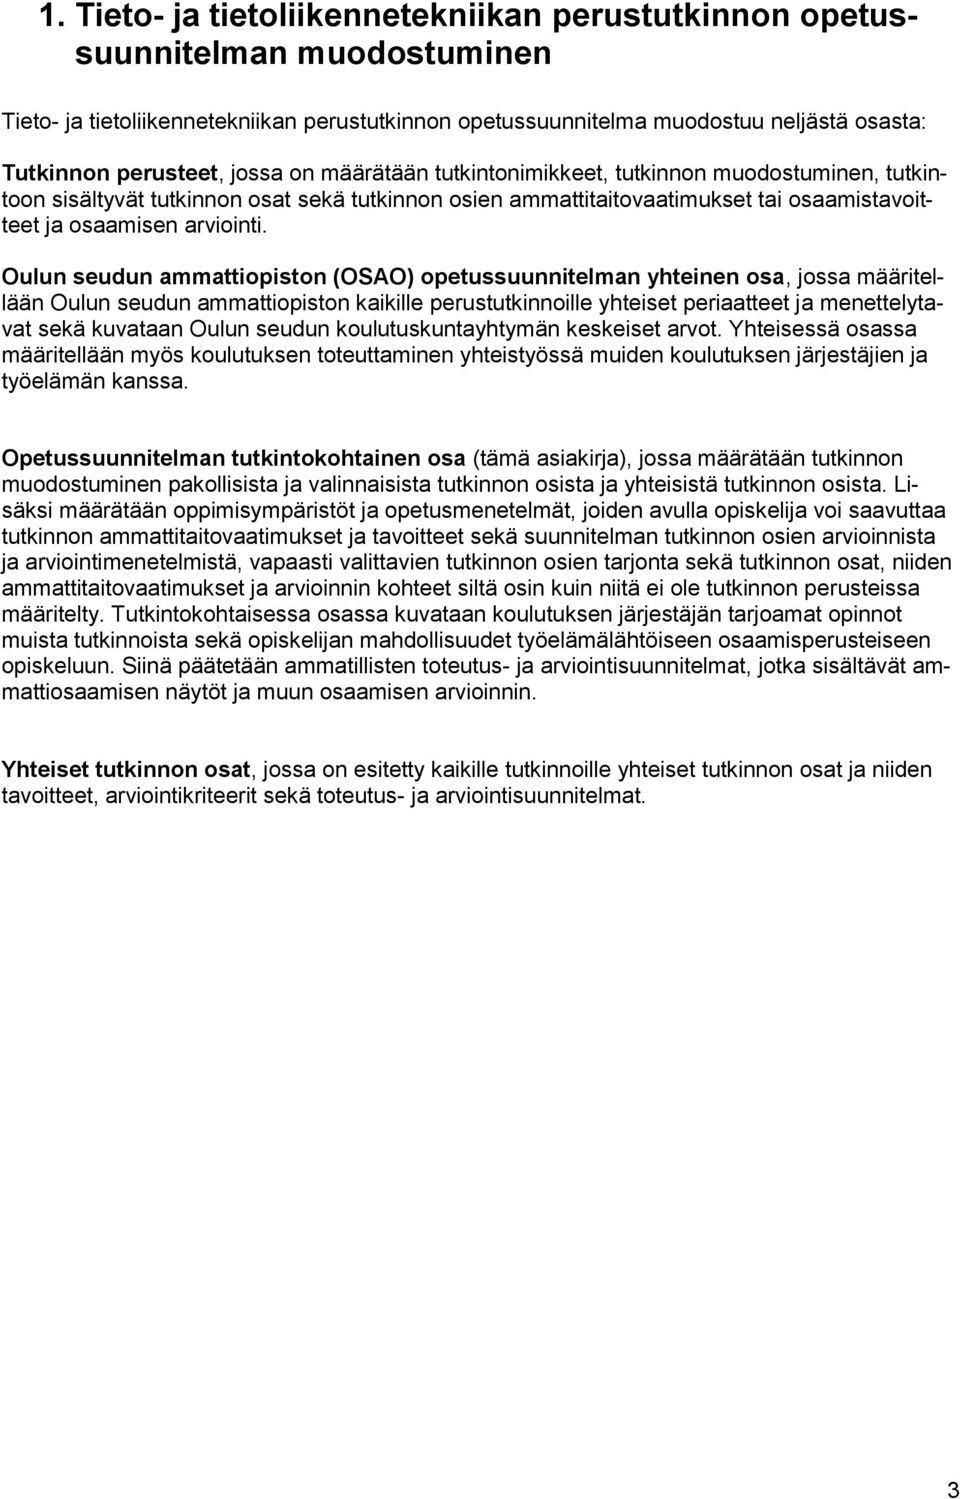 Oulun seudun ammattiopiston (OSAO) opetussuunnitelman yhteinen osa, jossa määritellään Oulun seudun ammattiopiston kaikille perustutkinnoille yhteiset periaatteet ja menettelytavat sekä kuvataan